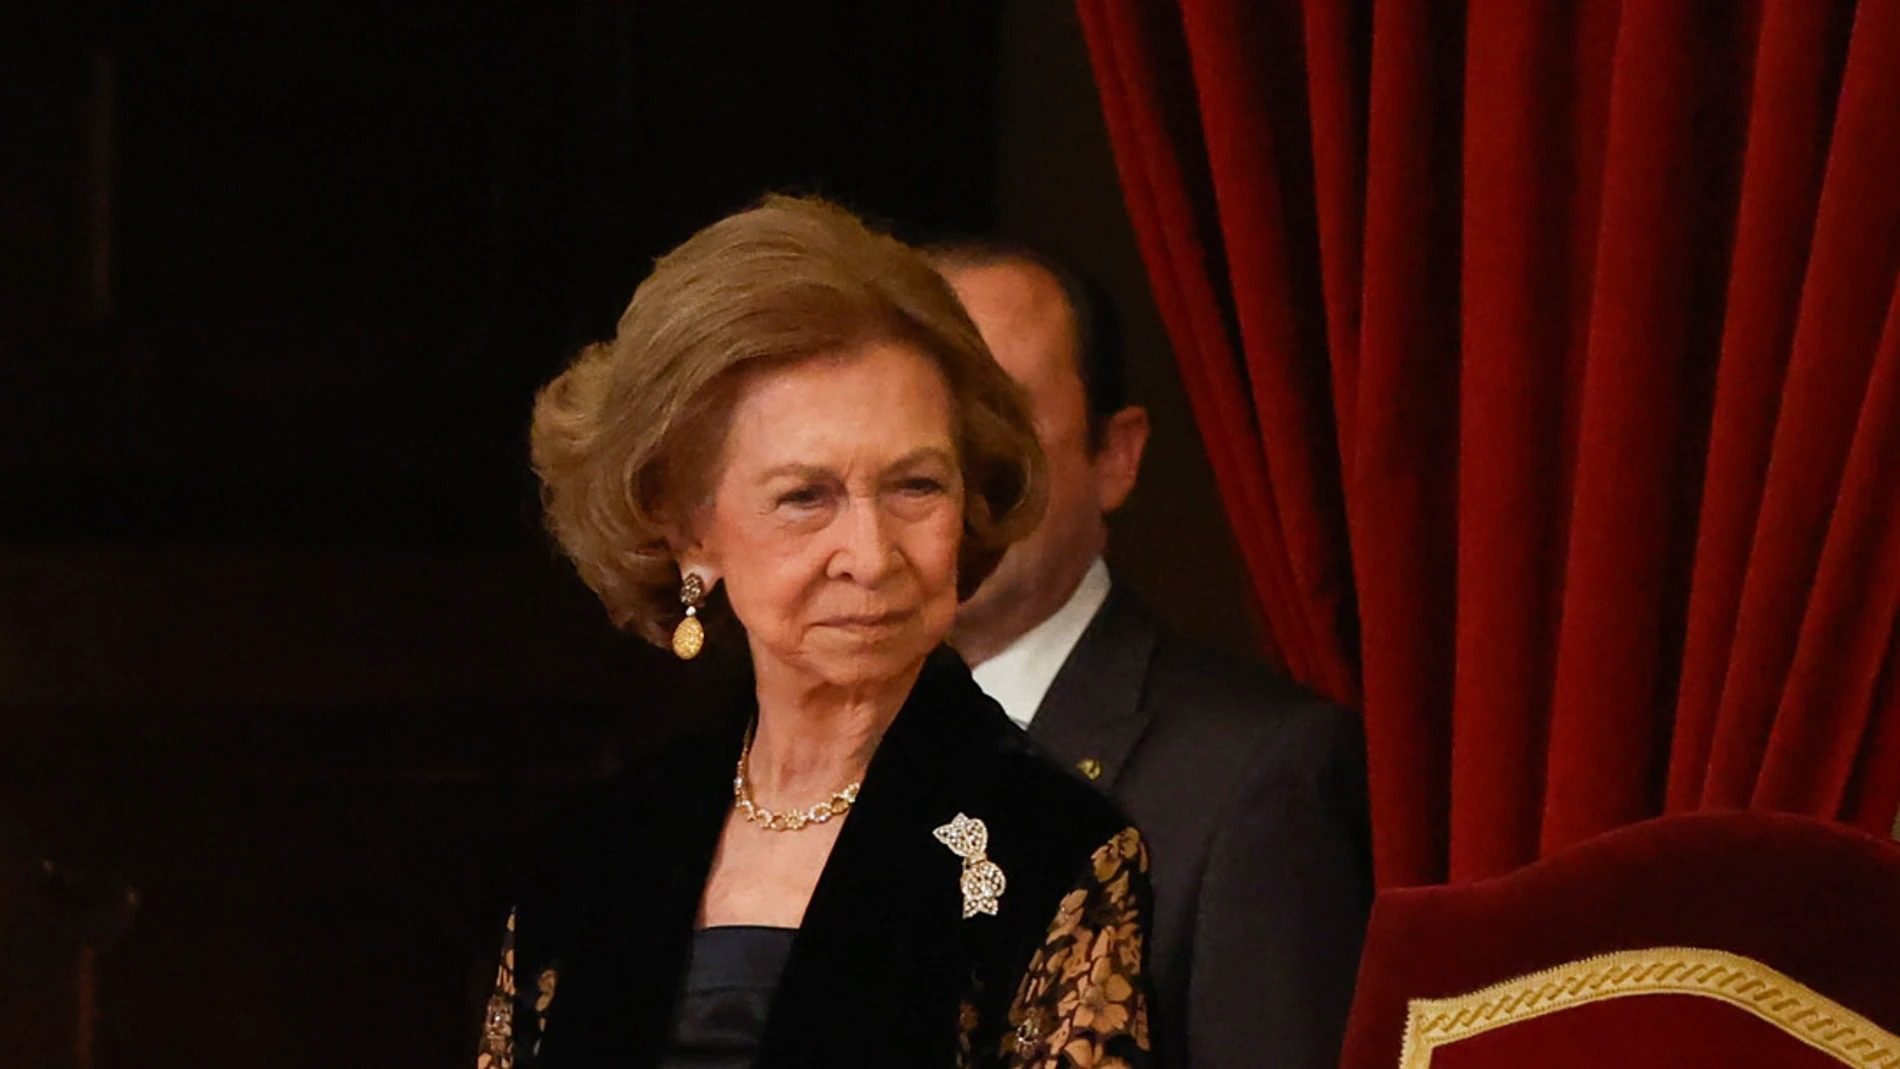 La reina Sofía intervino cuando fue consciente que consumía drogas, también su hermano